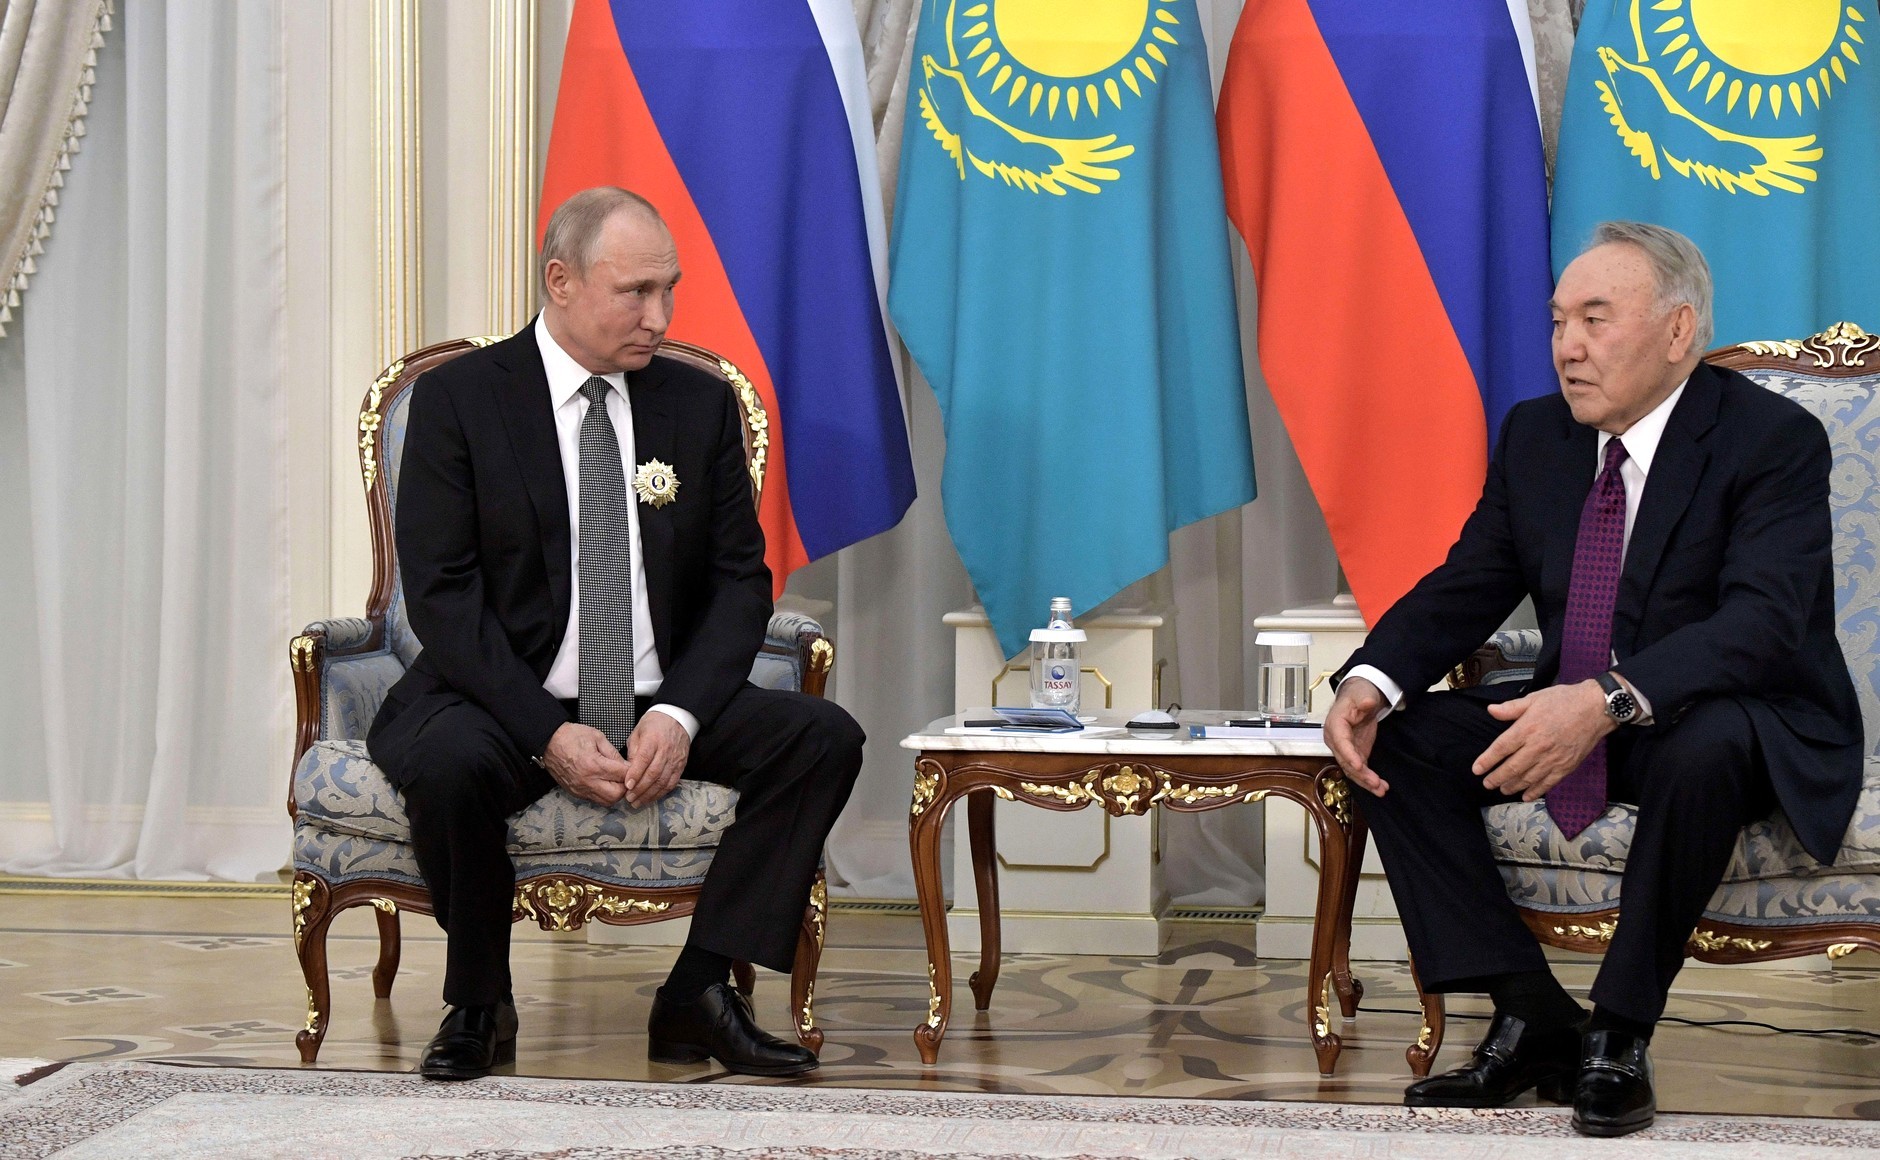 Владимир Путин и Нурсултан Назарбаев. Фото © Kremlin.ru
